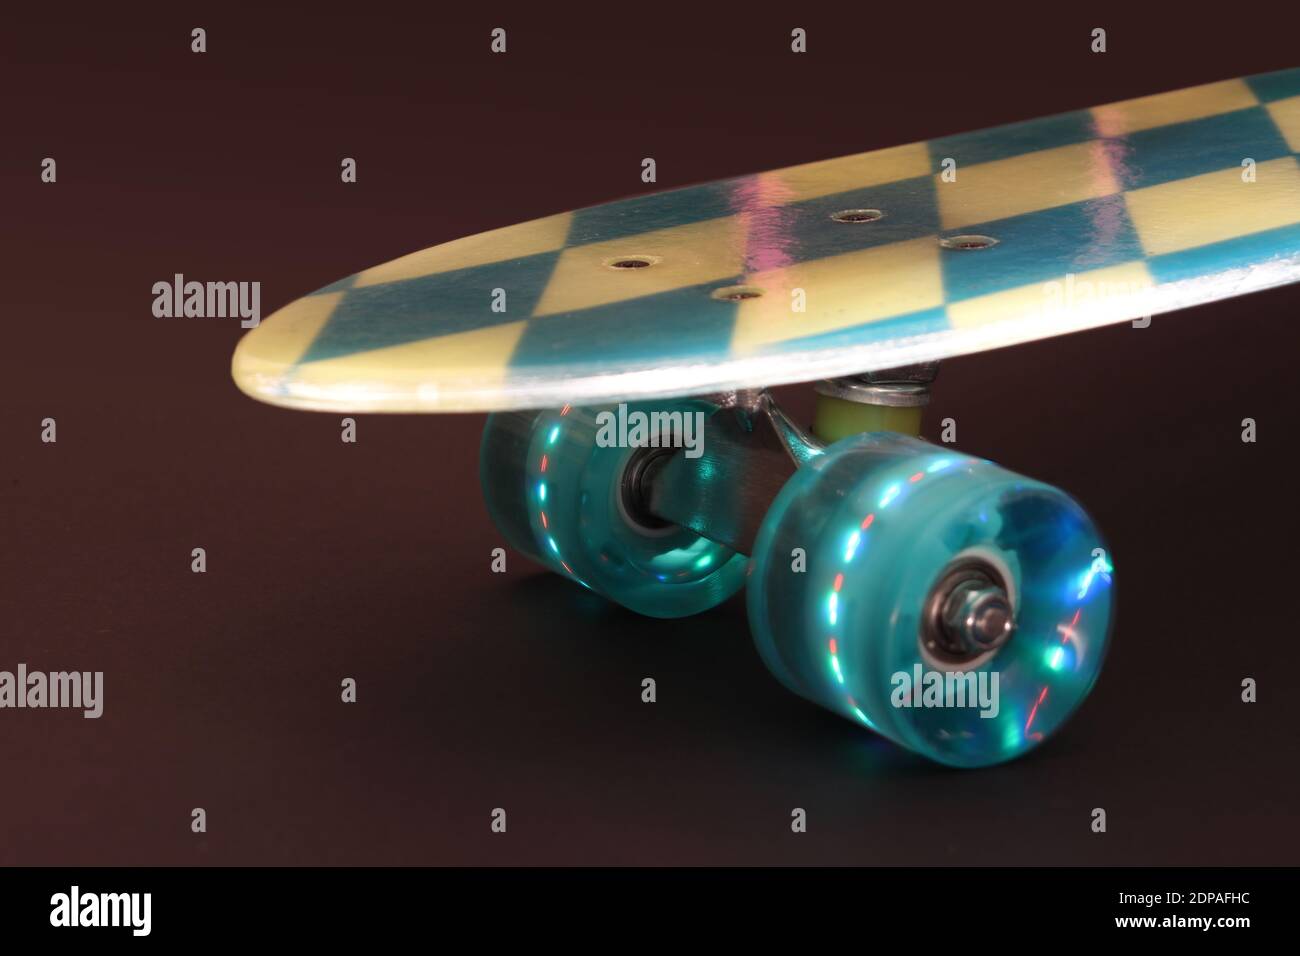 Bavaria-Design Skateboard mit durchscheinendem Deck und LED-Rollen, die beim Rollen aufleuchten Stock Photo